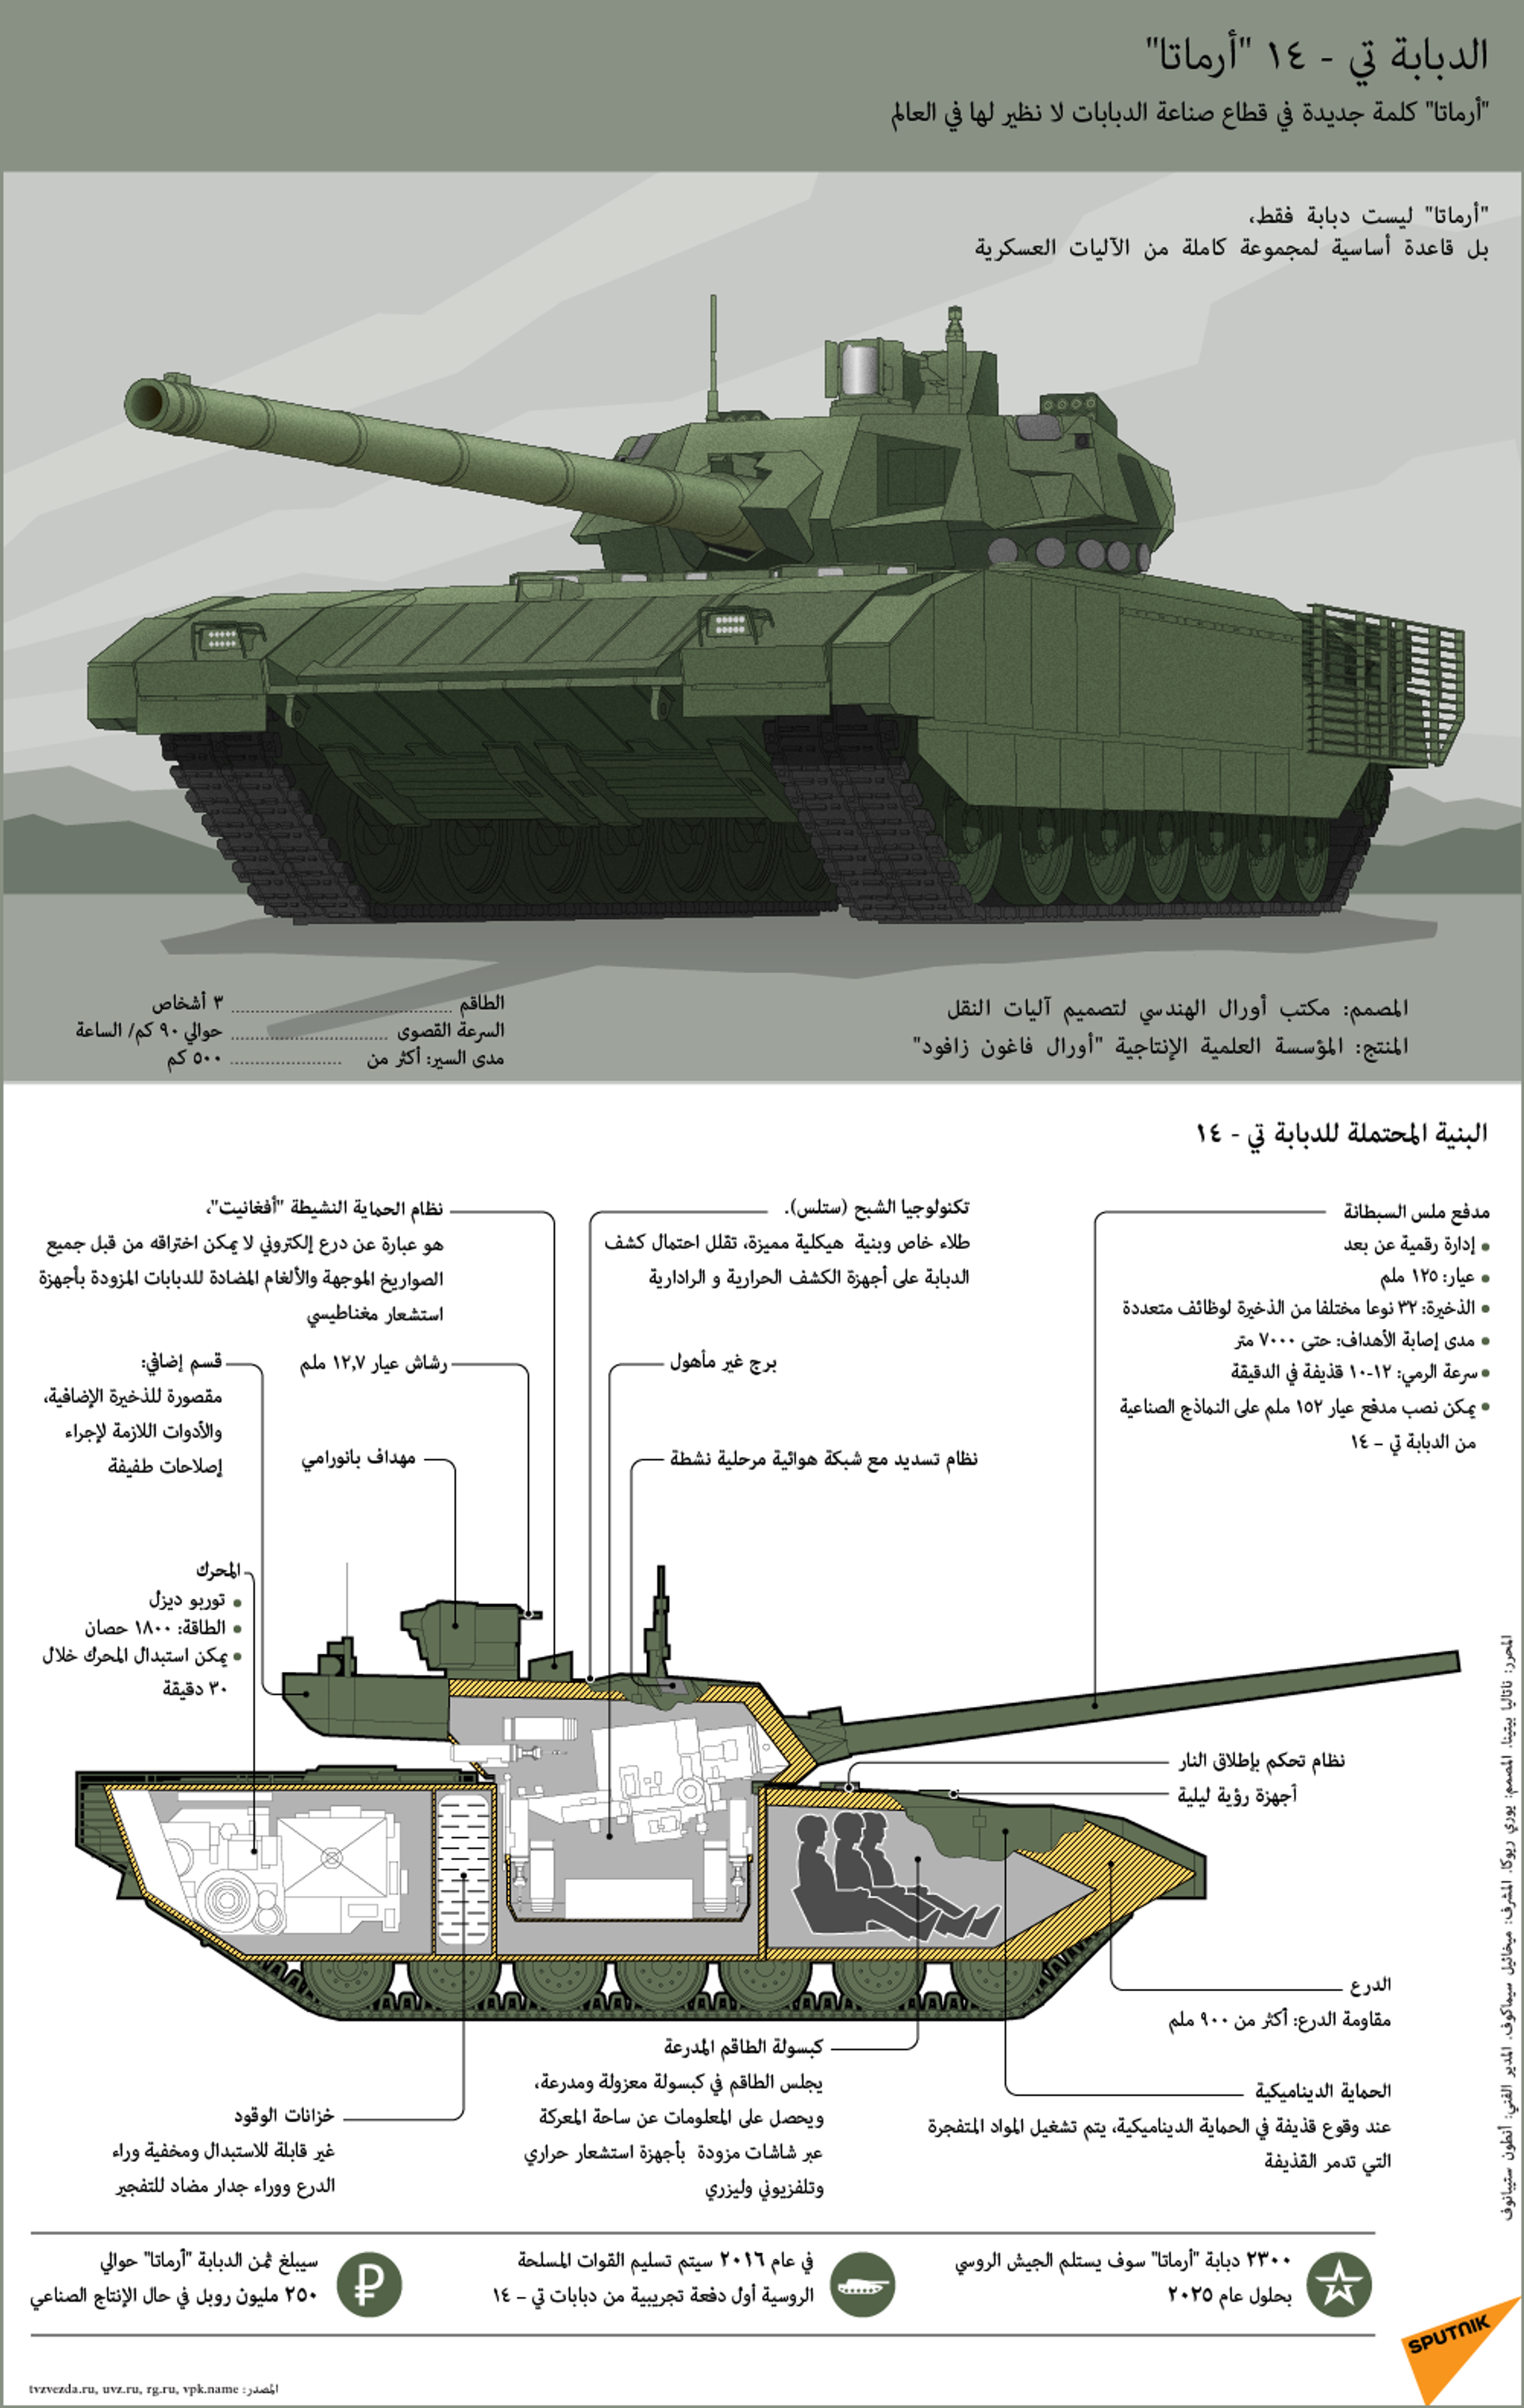 الشركة المصنعة لدبابة أرماتا تعمل على خفض سعرها - سبوتنيك عربي, 1920, 21.02.2021